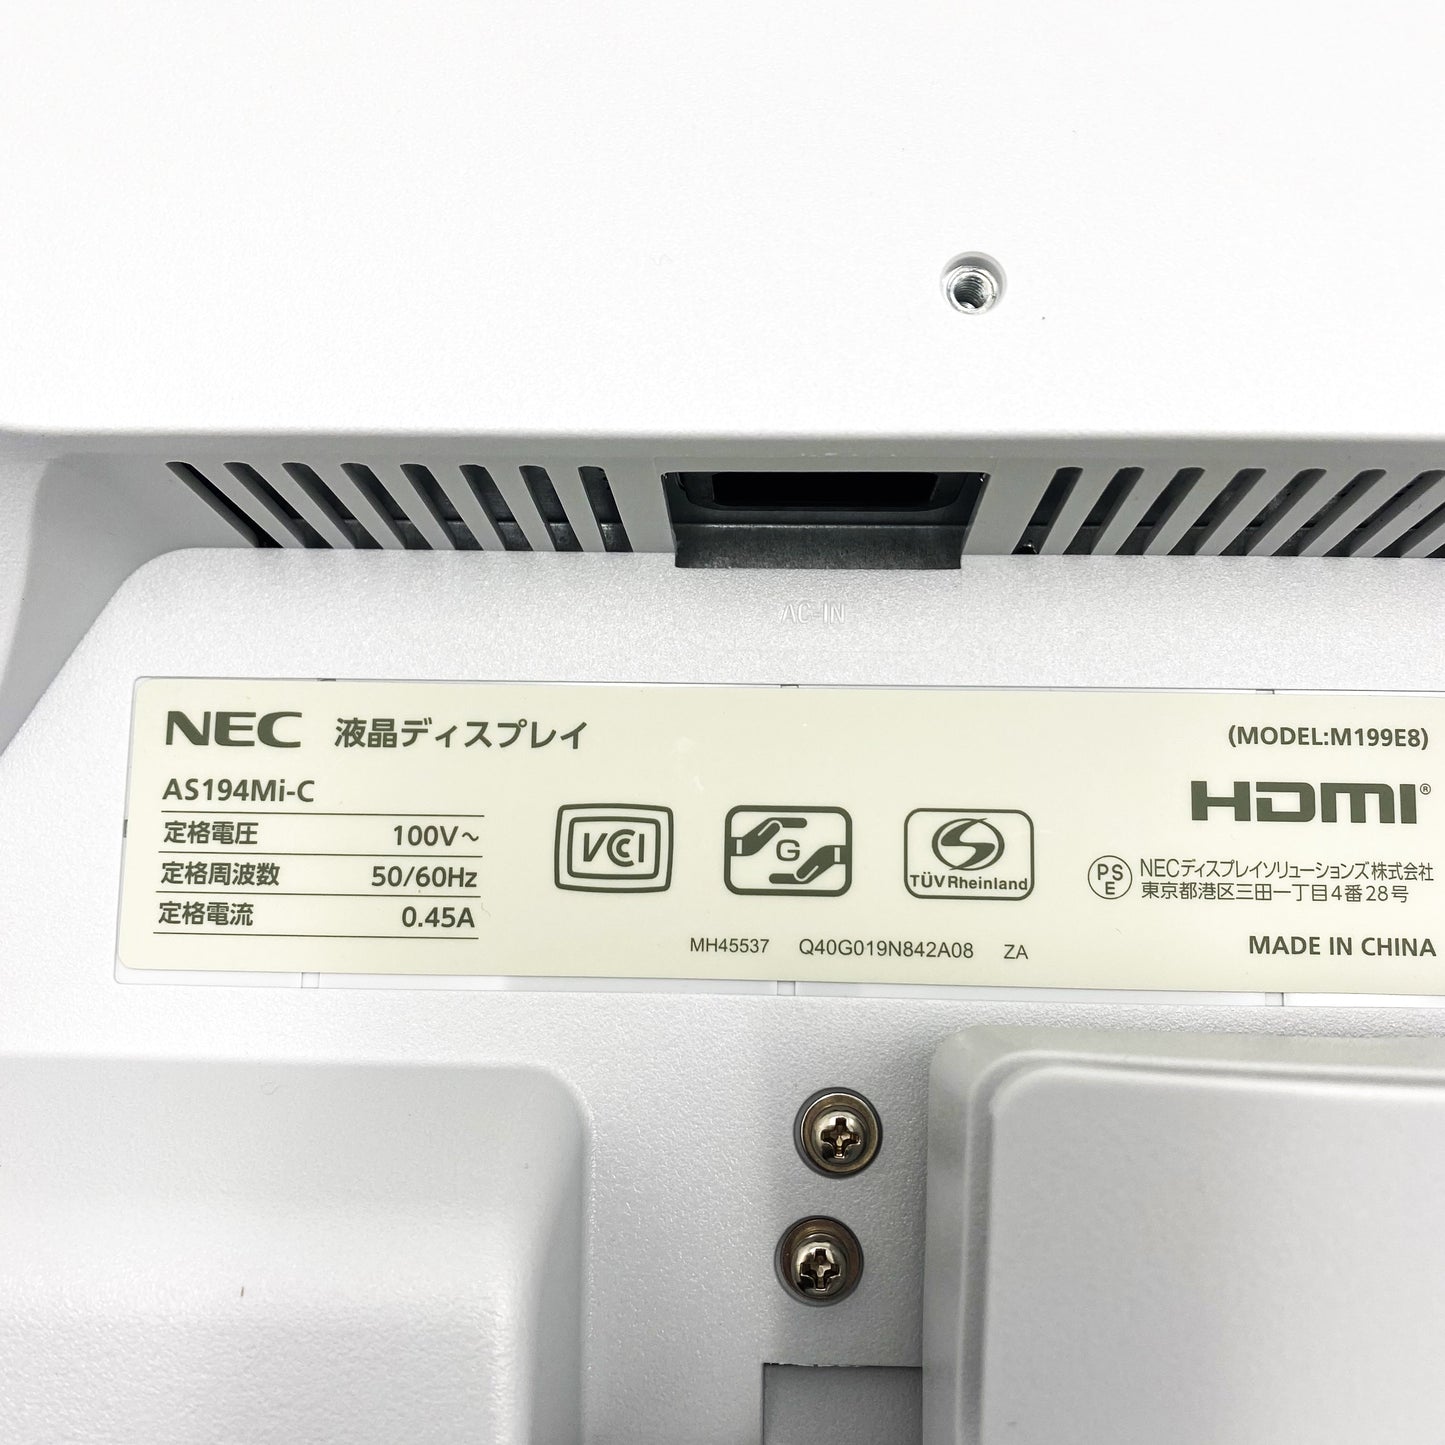 【中古モニター】19インチ メーカー NEC 型番 LCD-AS194MI-C 入力端子 HDMI DisplayPort D-Sub 解像度 1280×1024 中古 液晶 モニター PC ディスプレイ